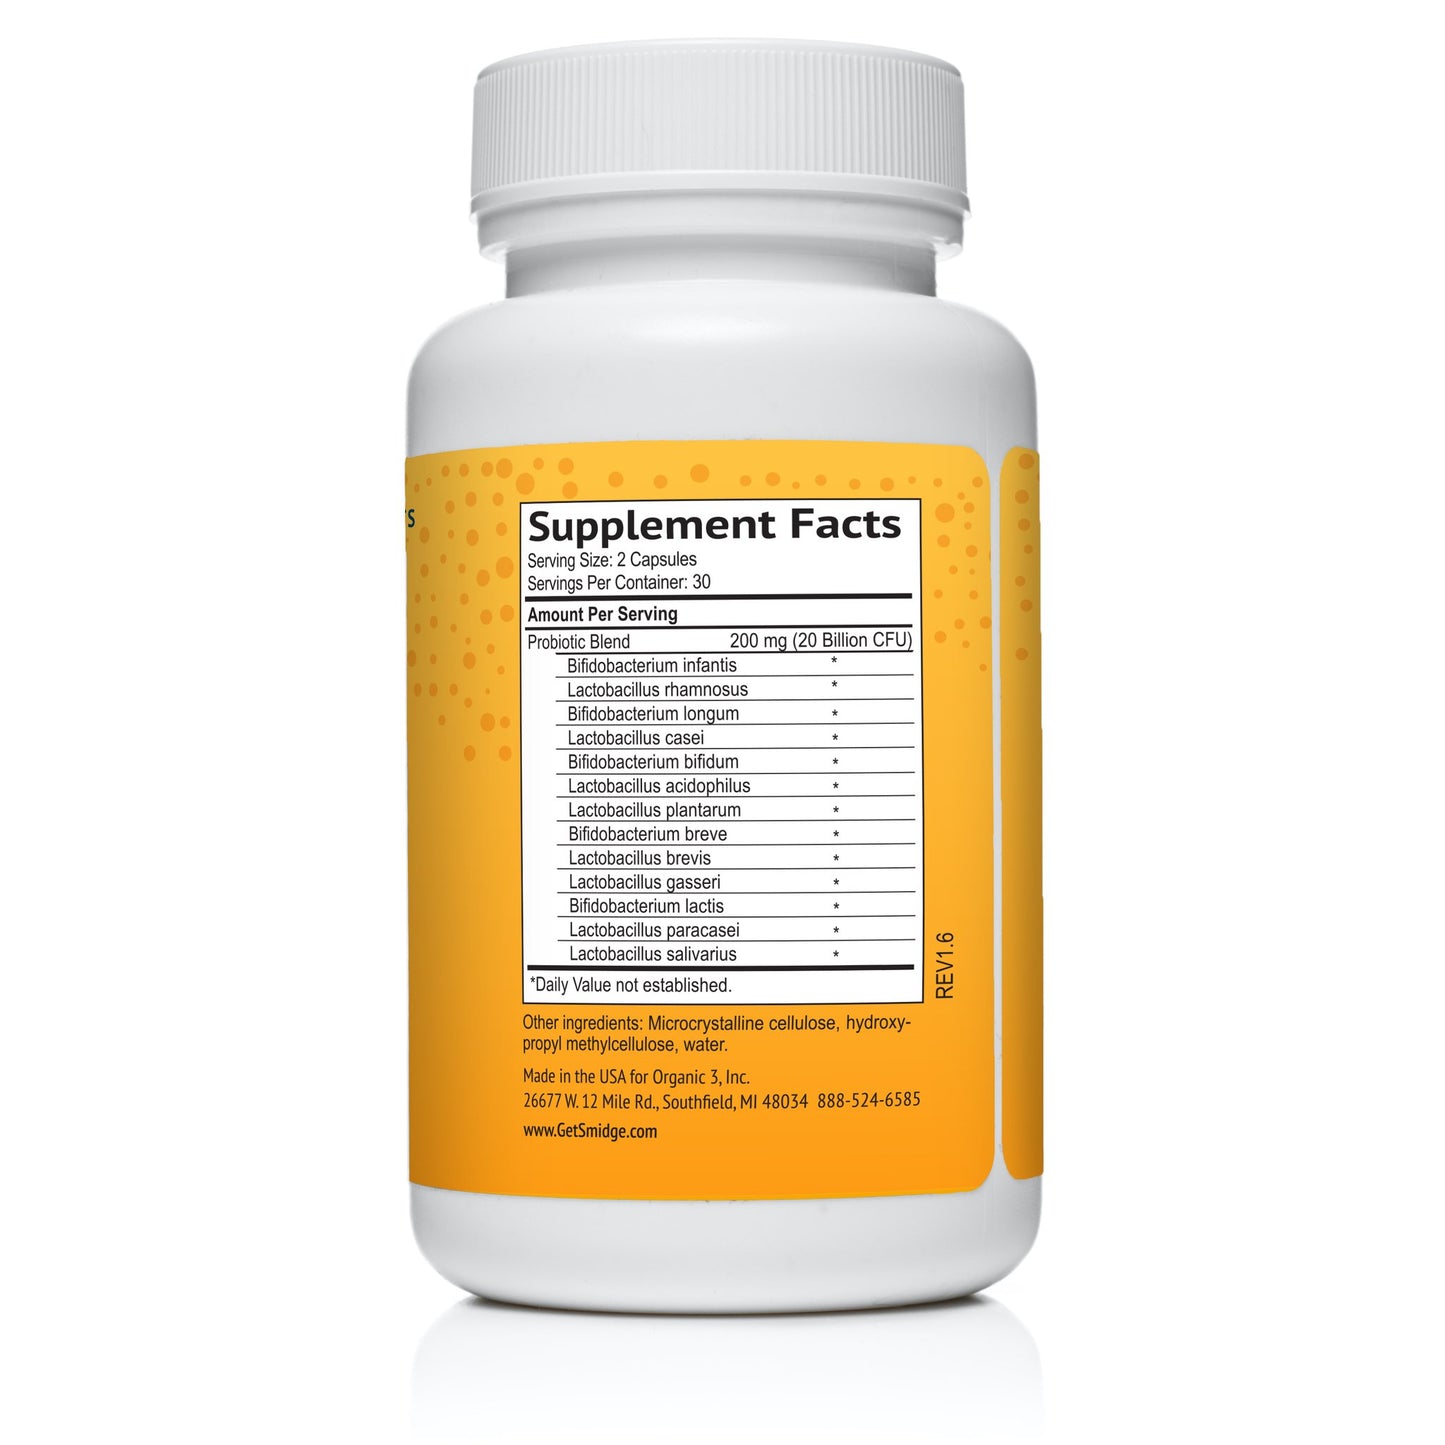 Smidge® Пробиотик оптимум - 60 капсули